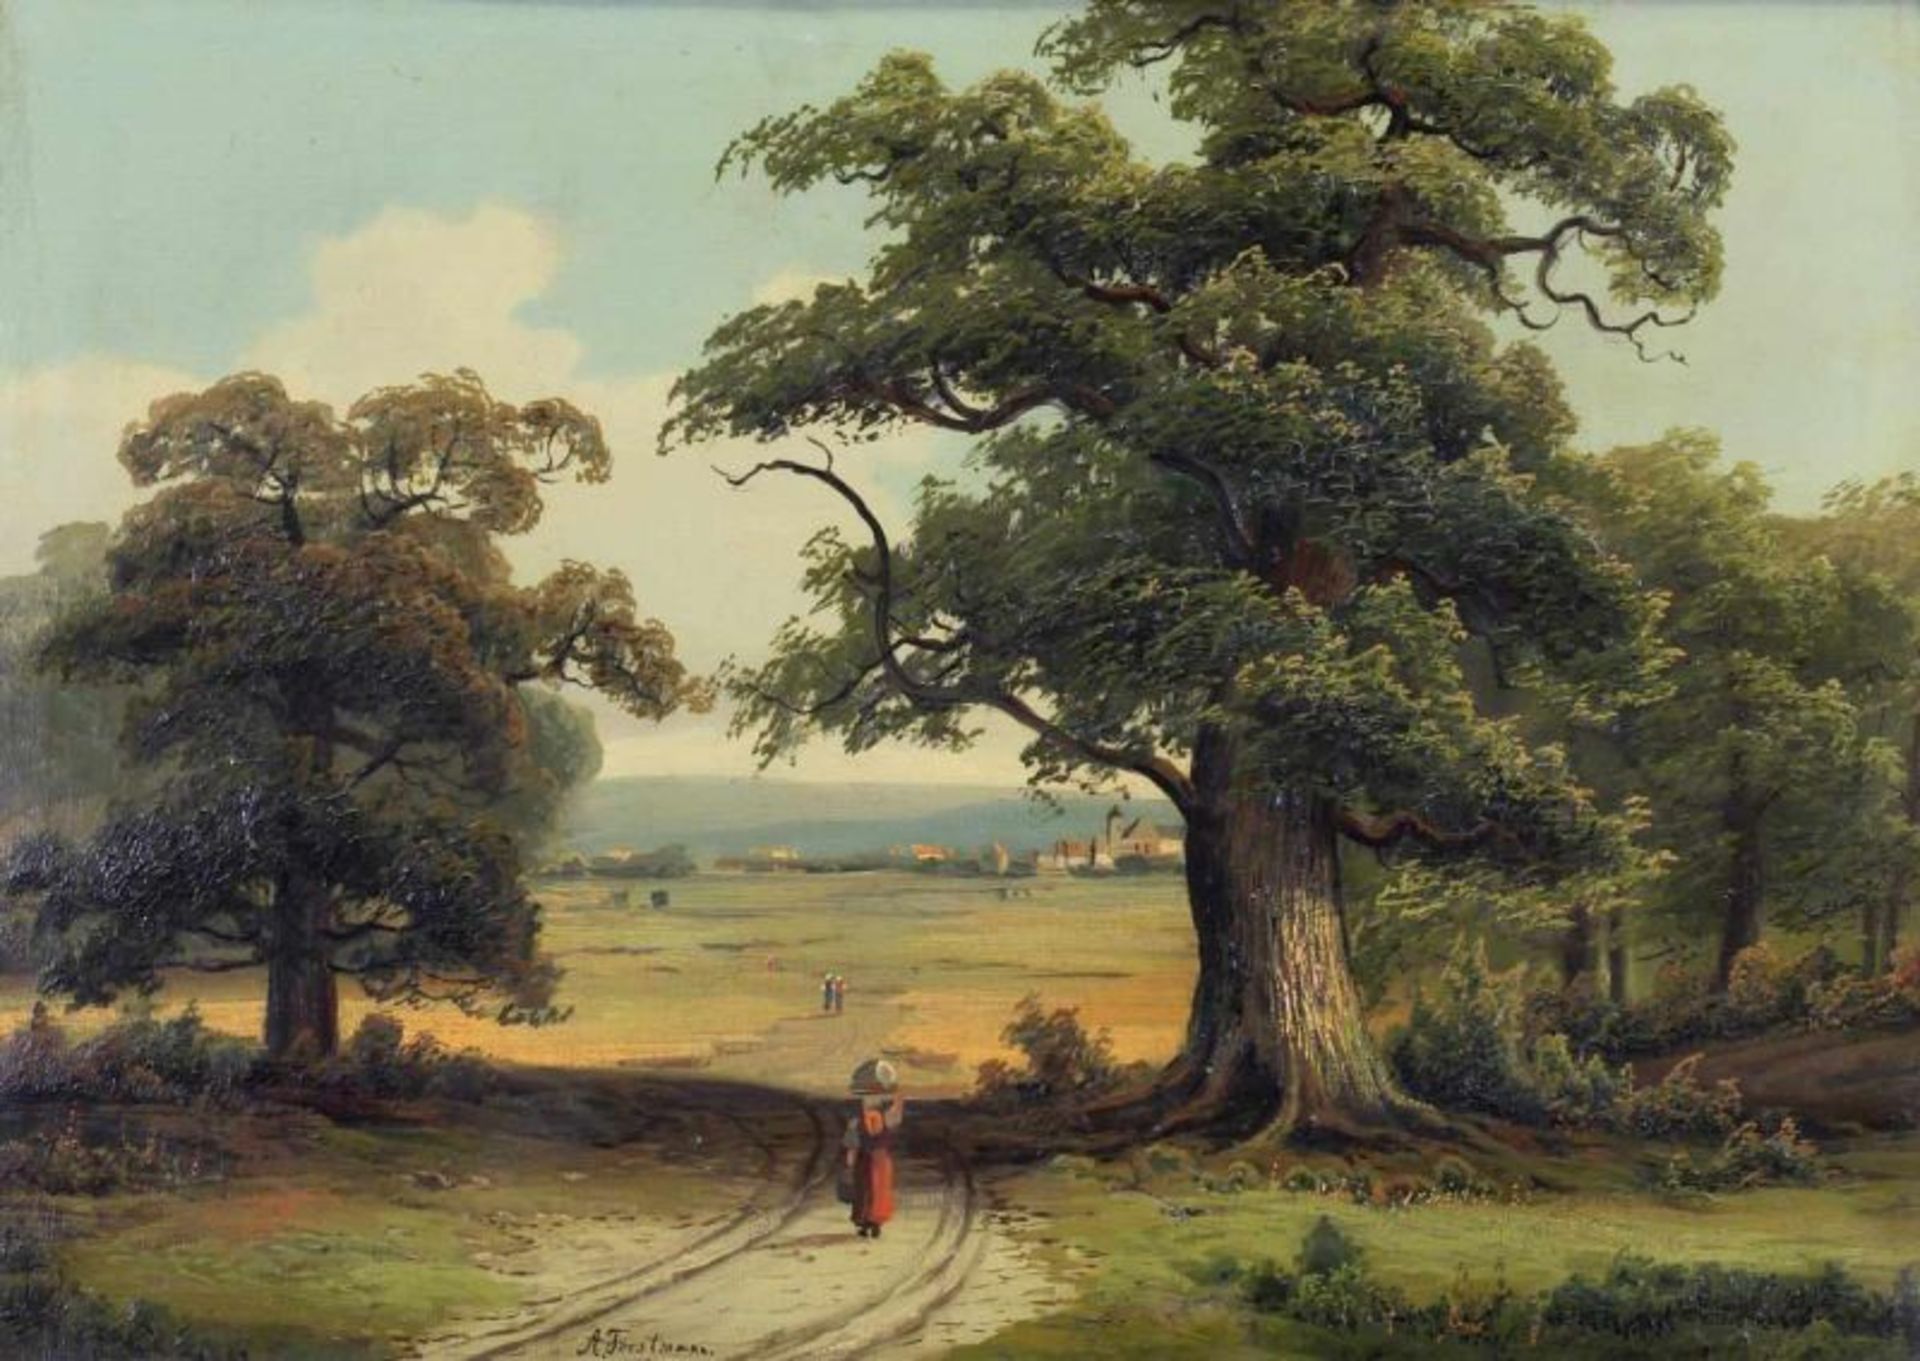 Forstmann, Arnold (1842 Düsseldorf - 1904, Schüler der KA Düsseldorf, Landschaftsmaler), "